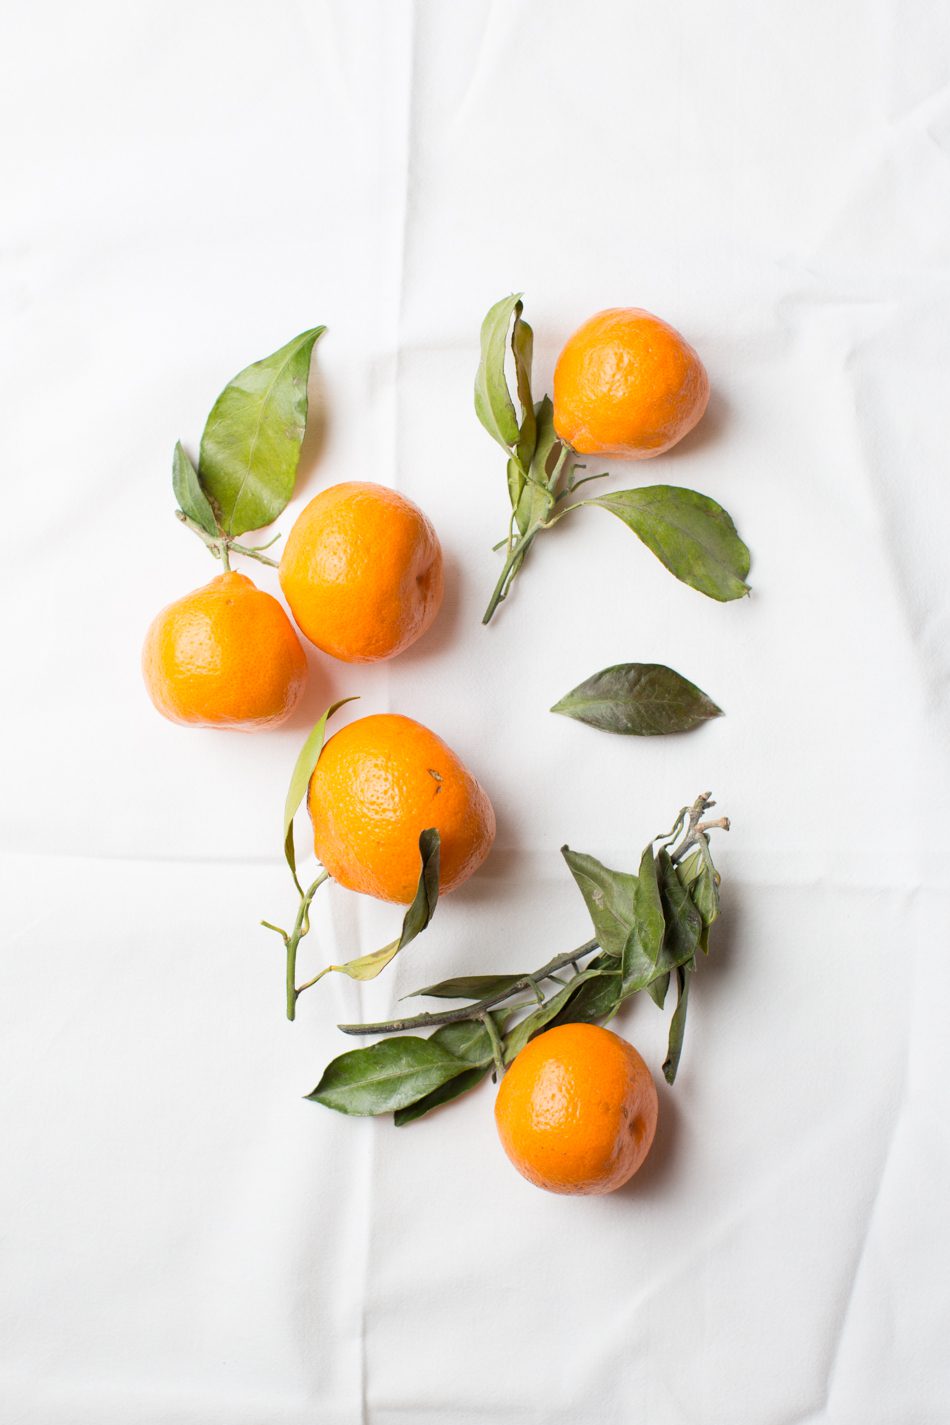 tableanddish_orange_dragonfruit_salad-4243